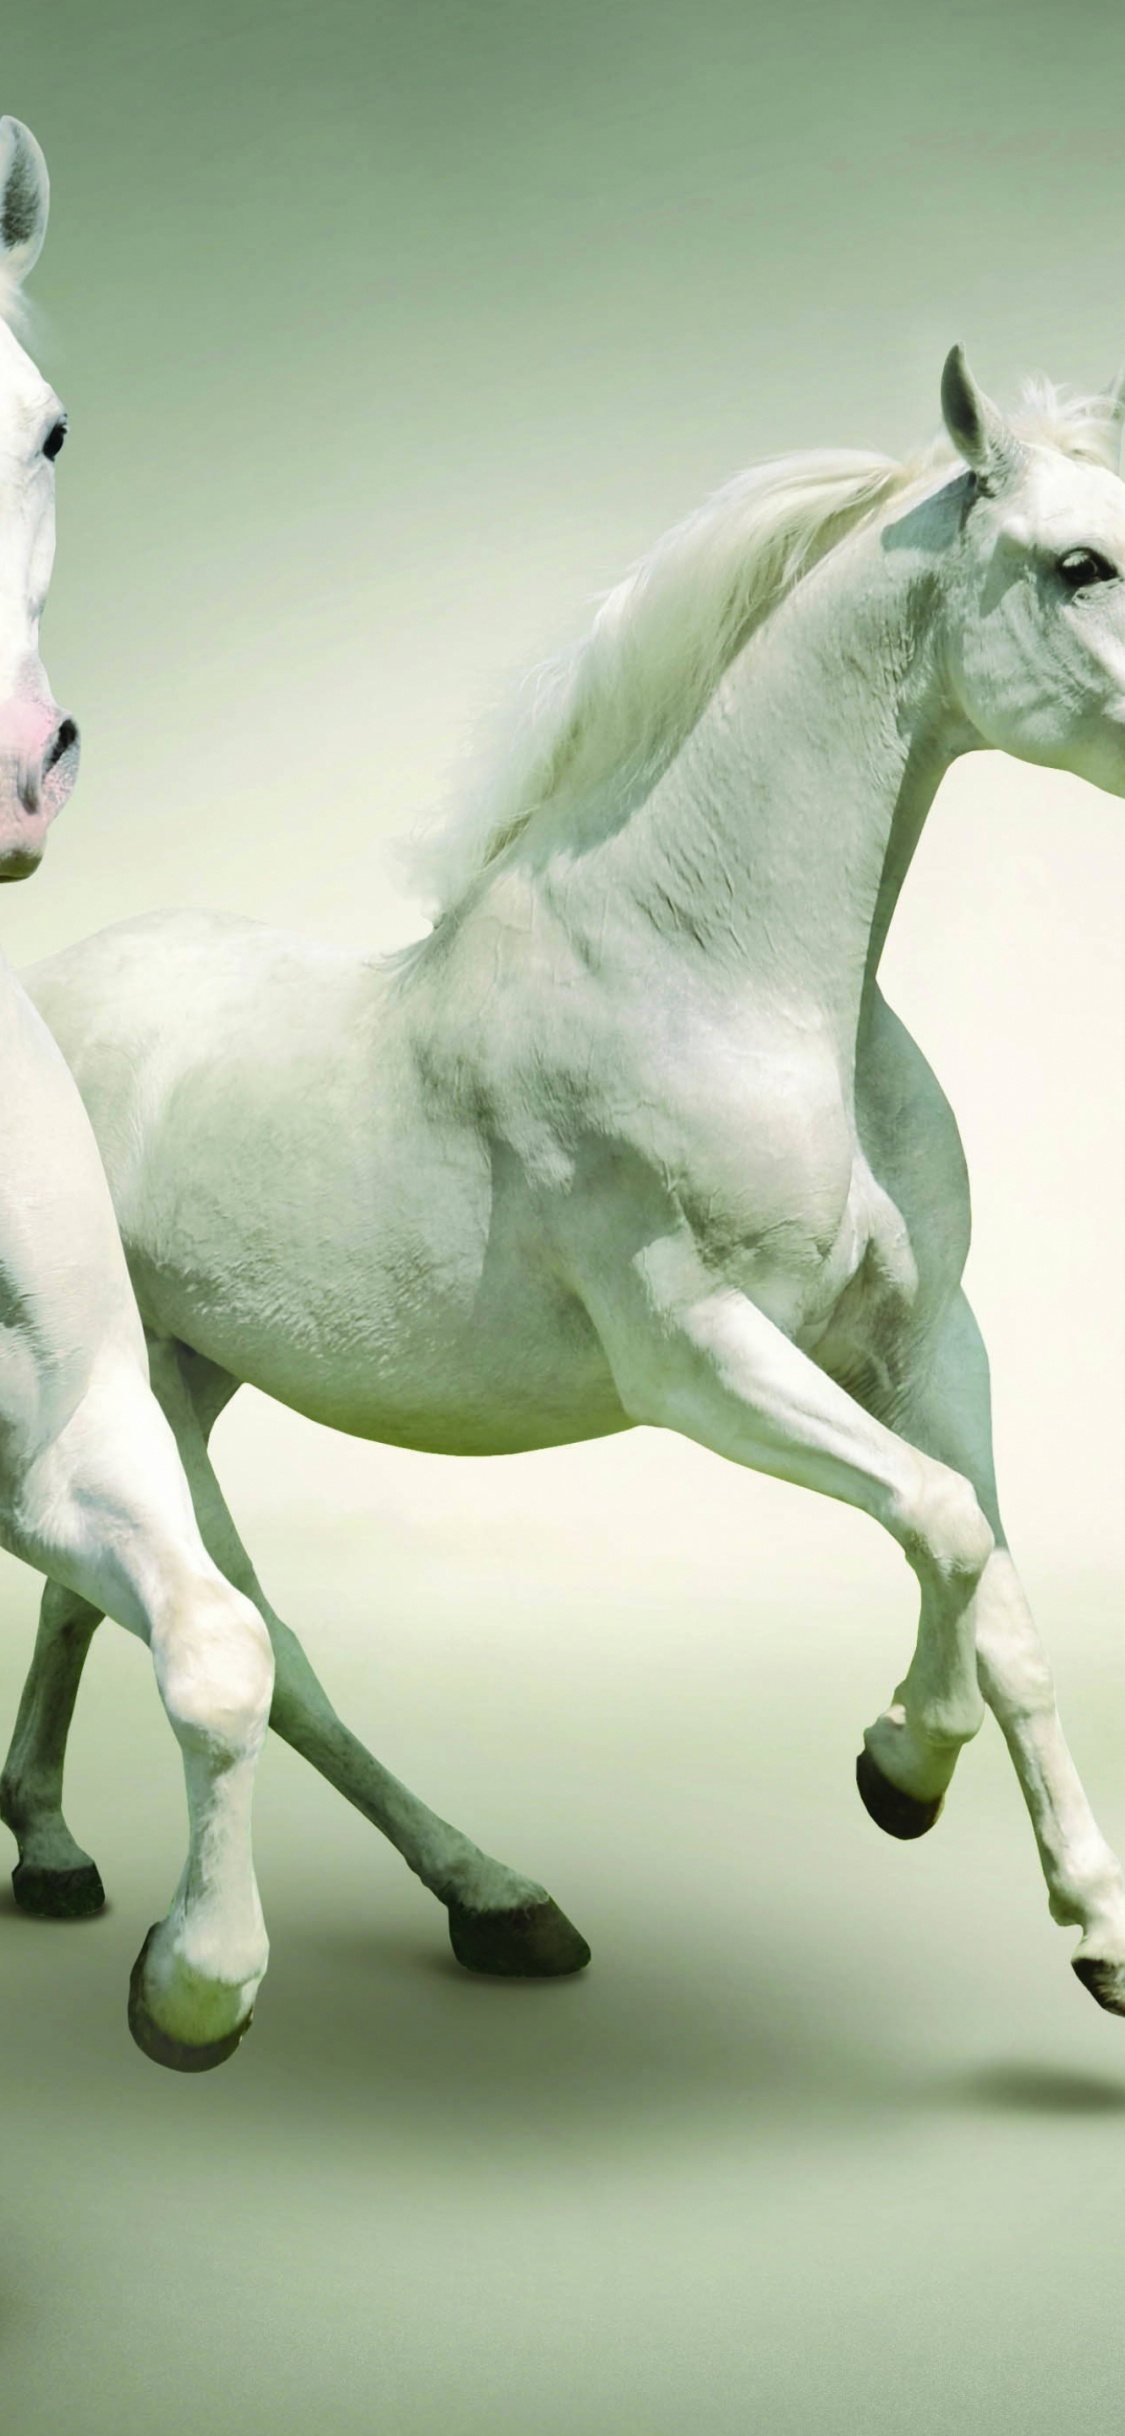 Weißes Pferd Mit Schwarz-weiß Gepunktetem Hemd. Wallpaper in 1125x2436 Resolution